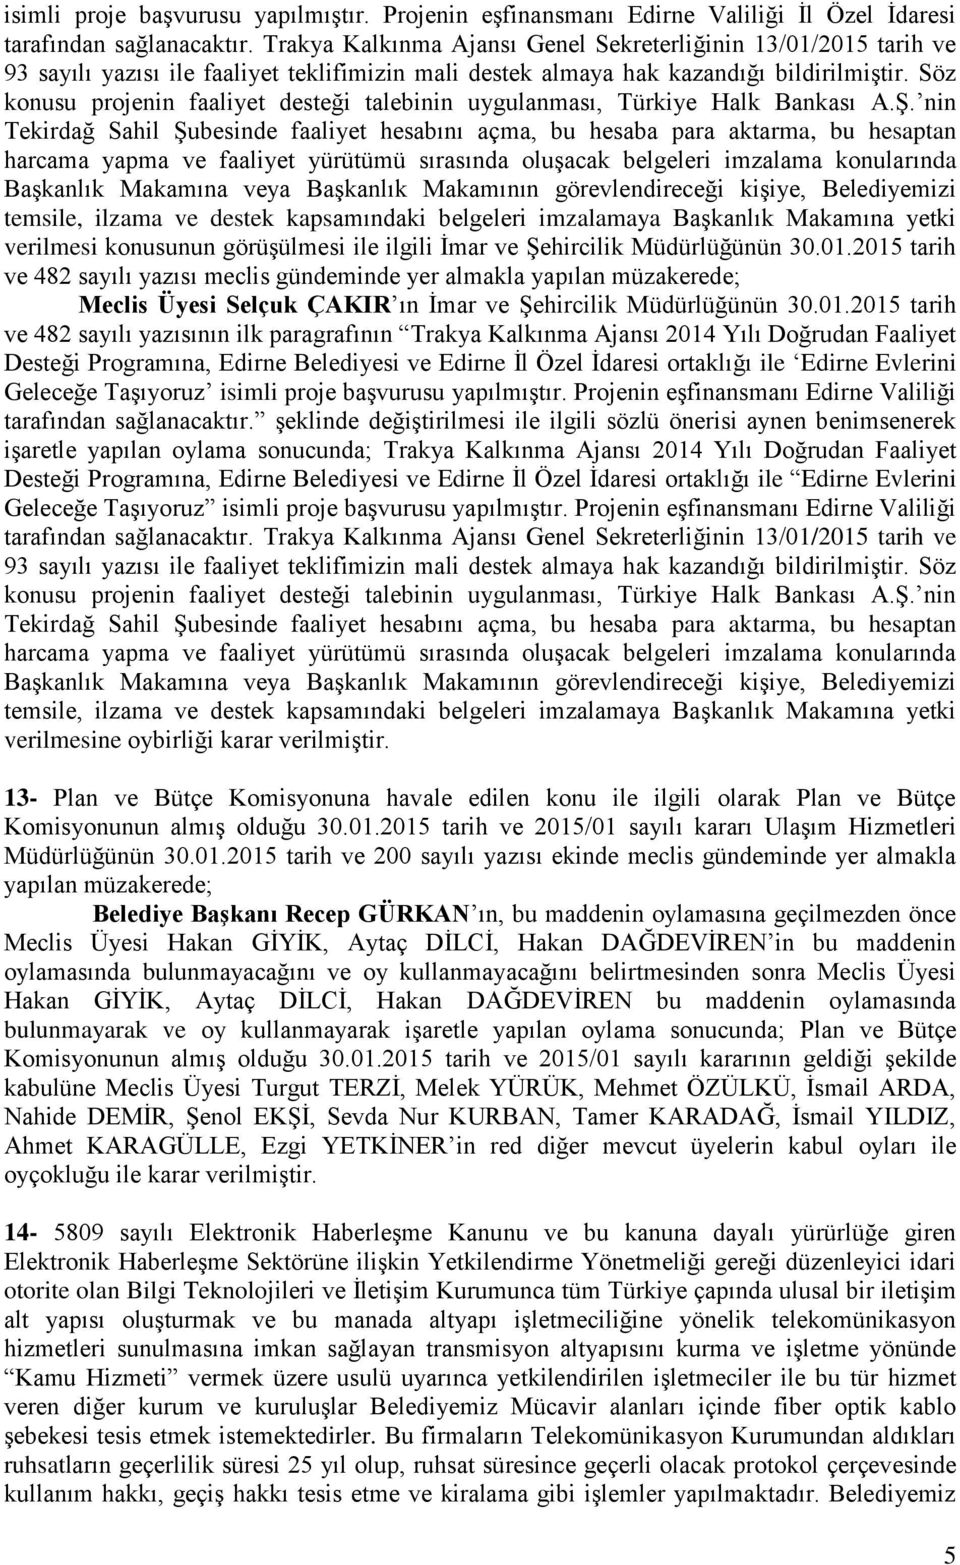 Söz konusu projenin faaliyet desteği talebinin uygulanması, Türkiye Halk Bankası A.ġ.